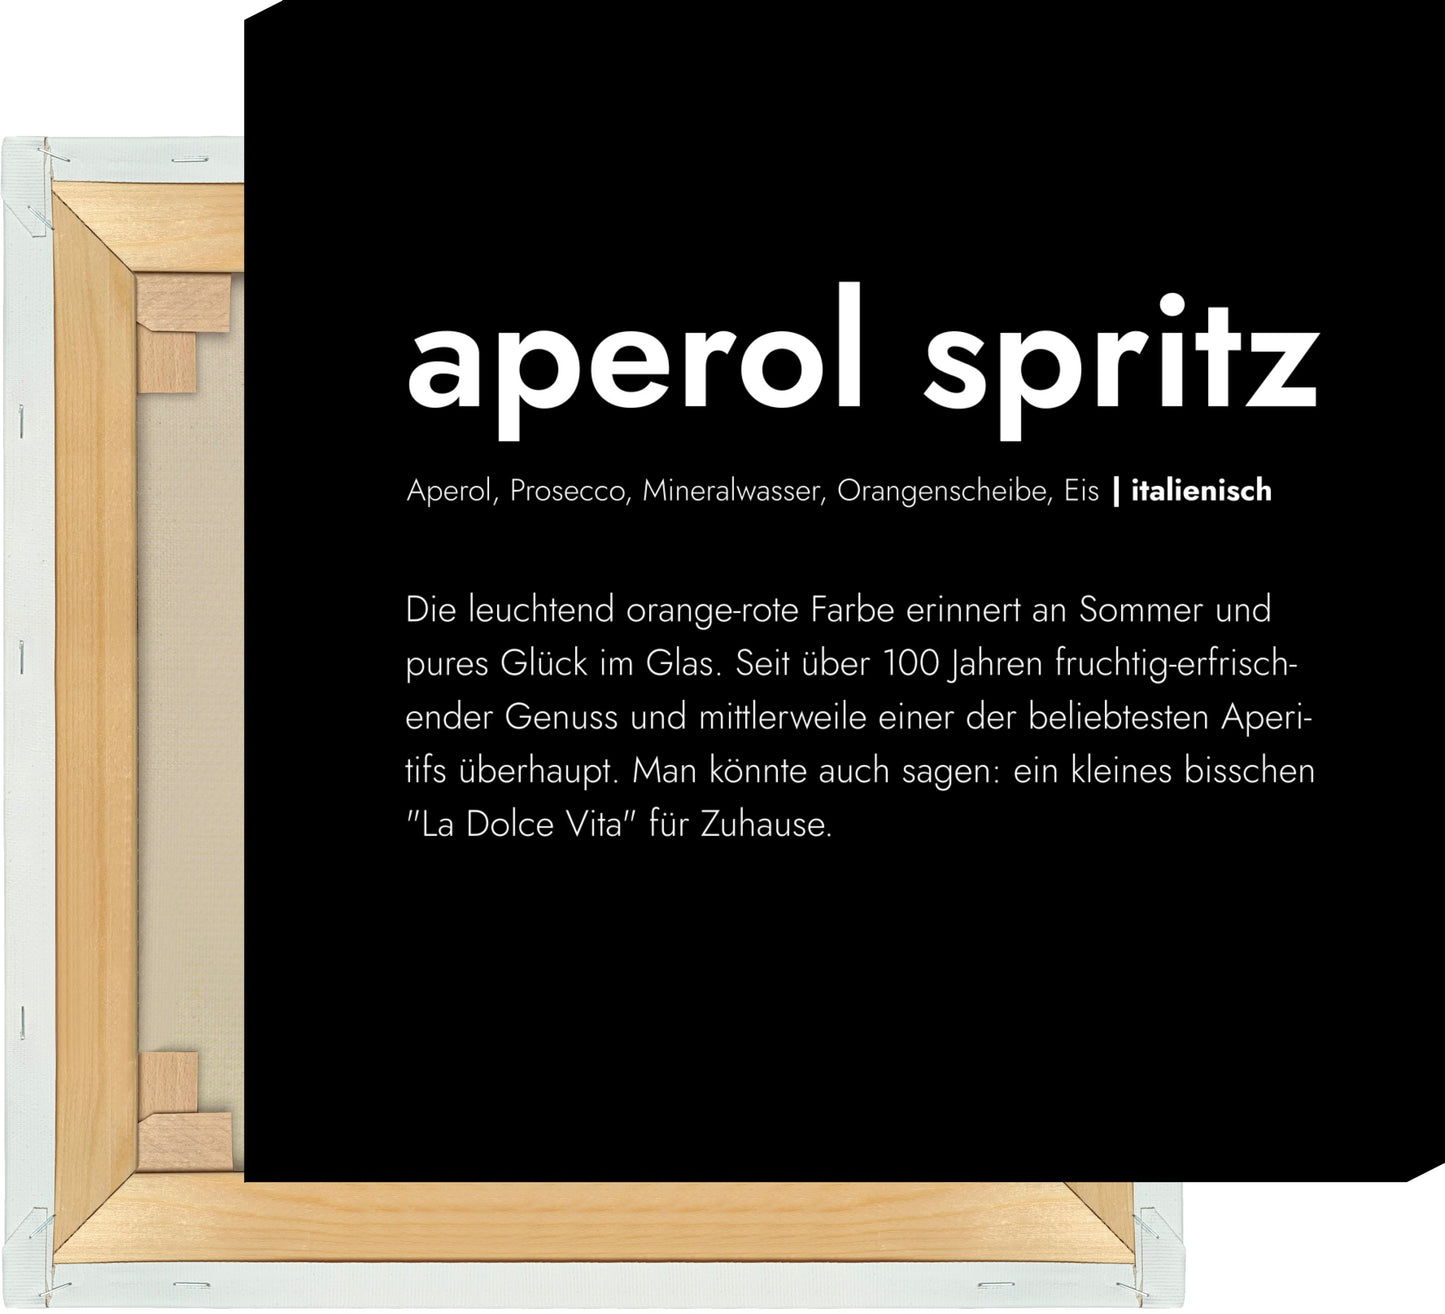 Leinwand Aperol Spritz - Definition